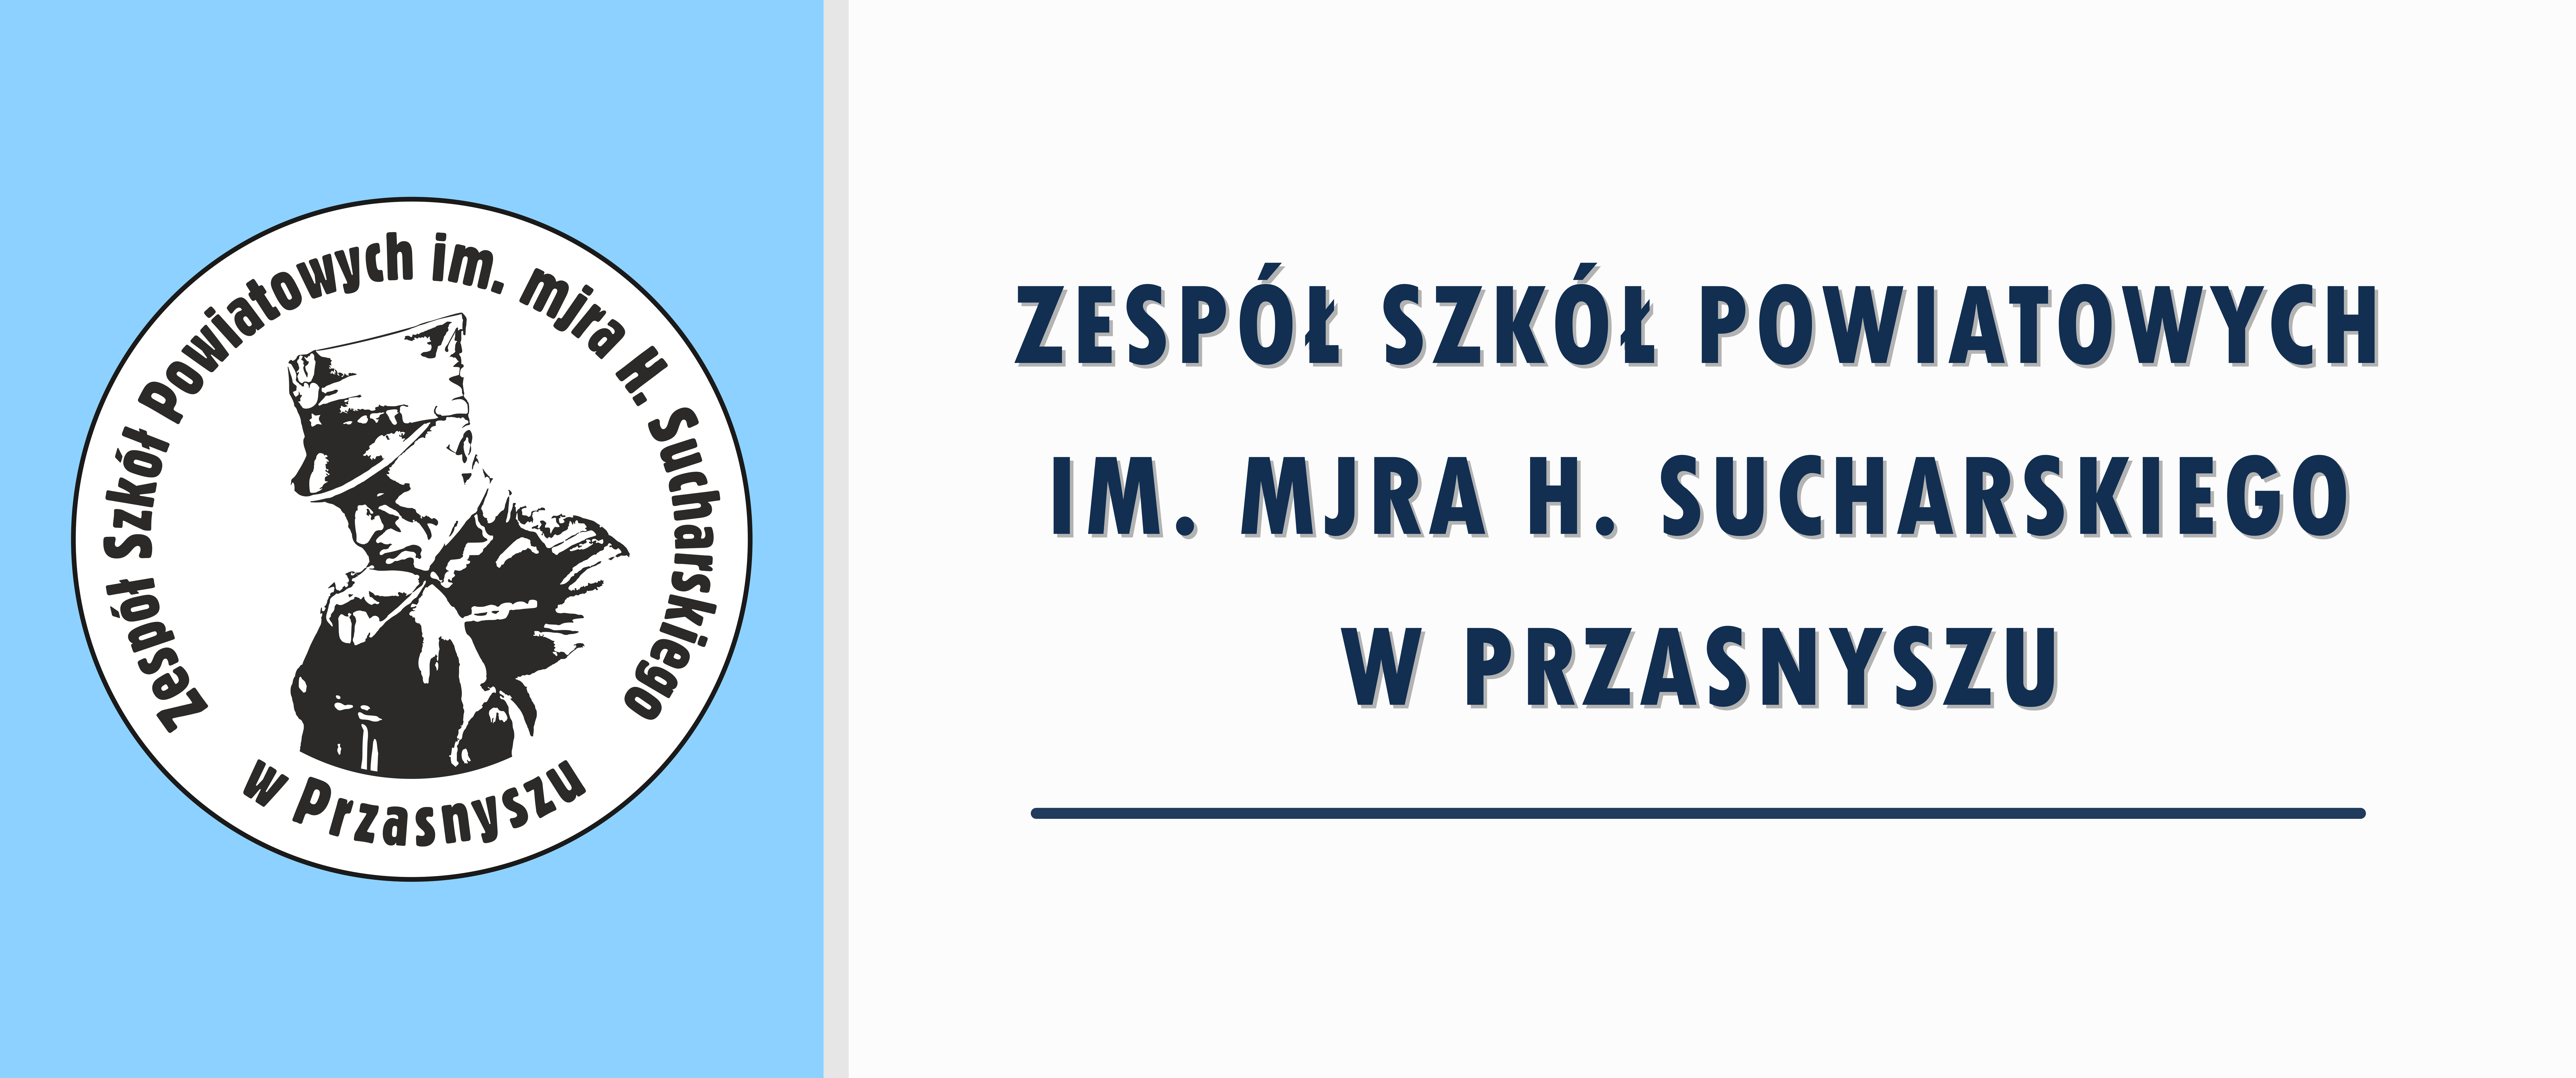 Od prawej: napis Zespół Szkół Powiatowych im. mjra H. Sucharskiego w Przasnyszu i logo szkoły